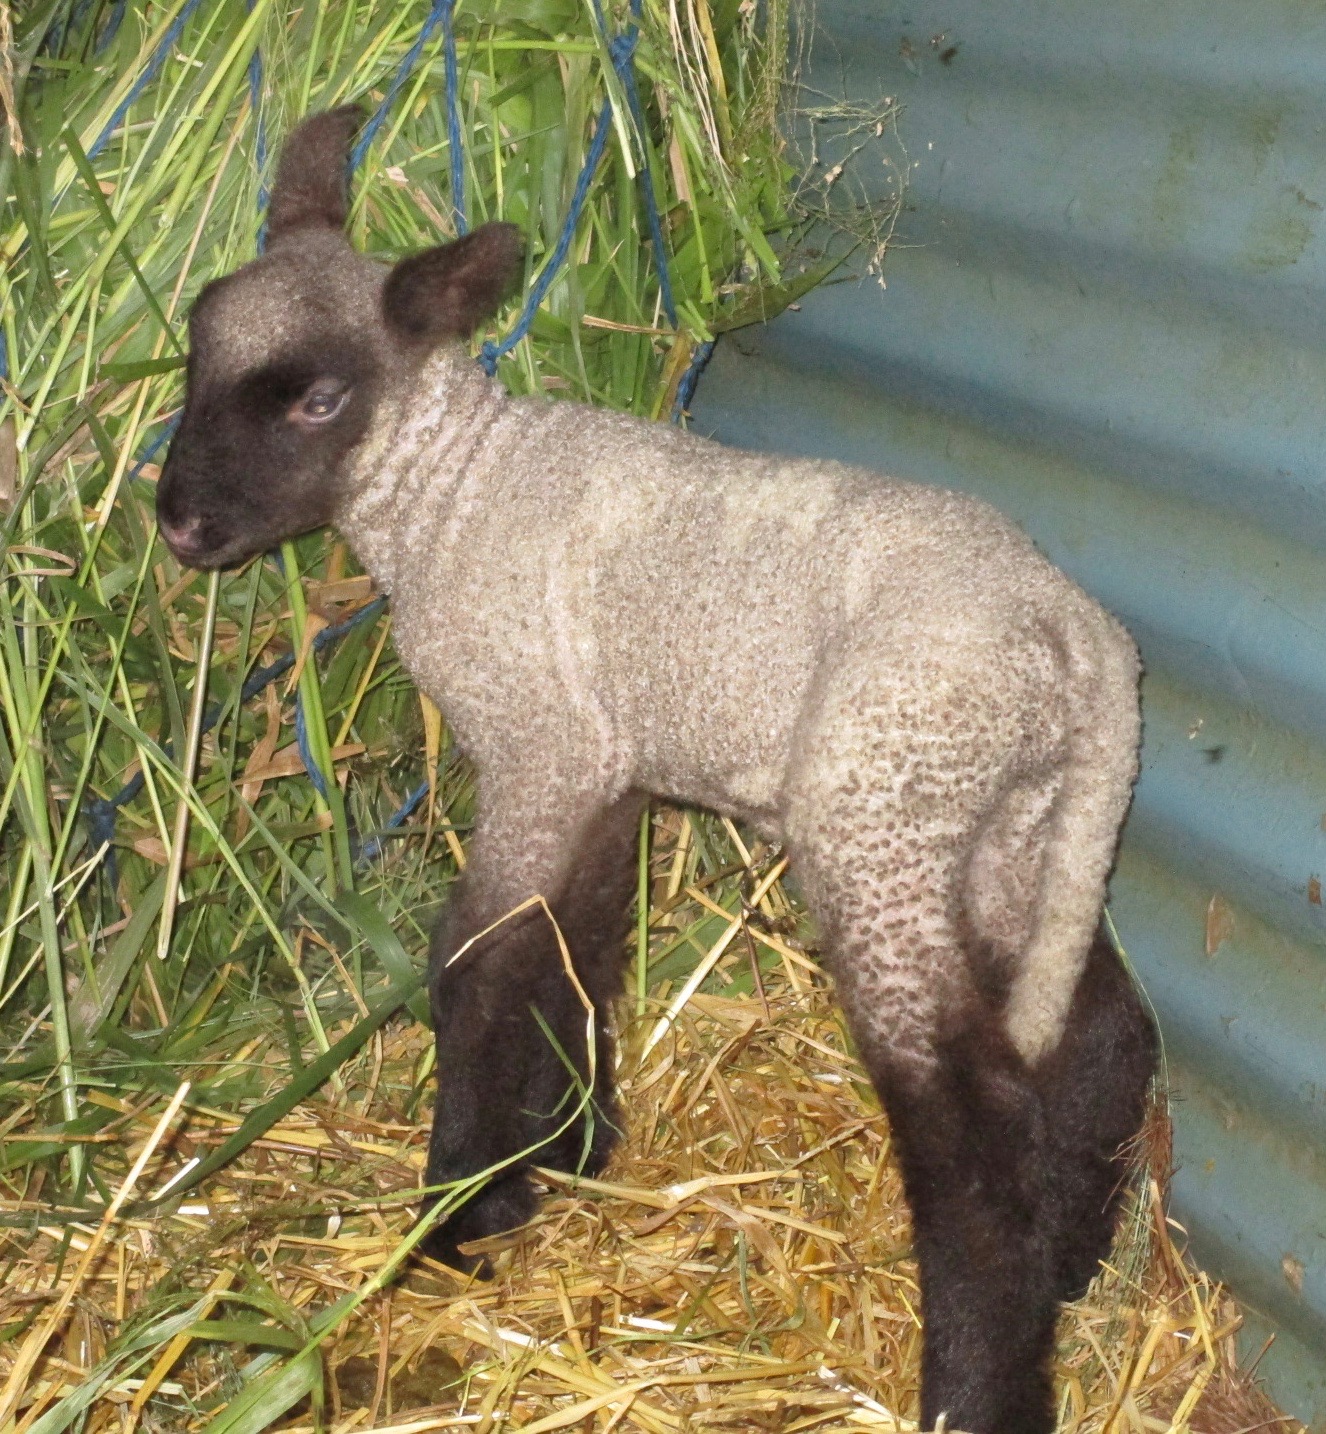 Ewe lamb at 2 days old